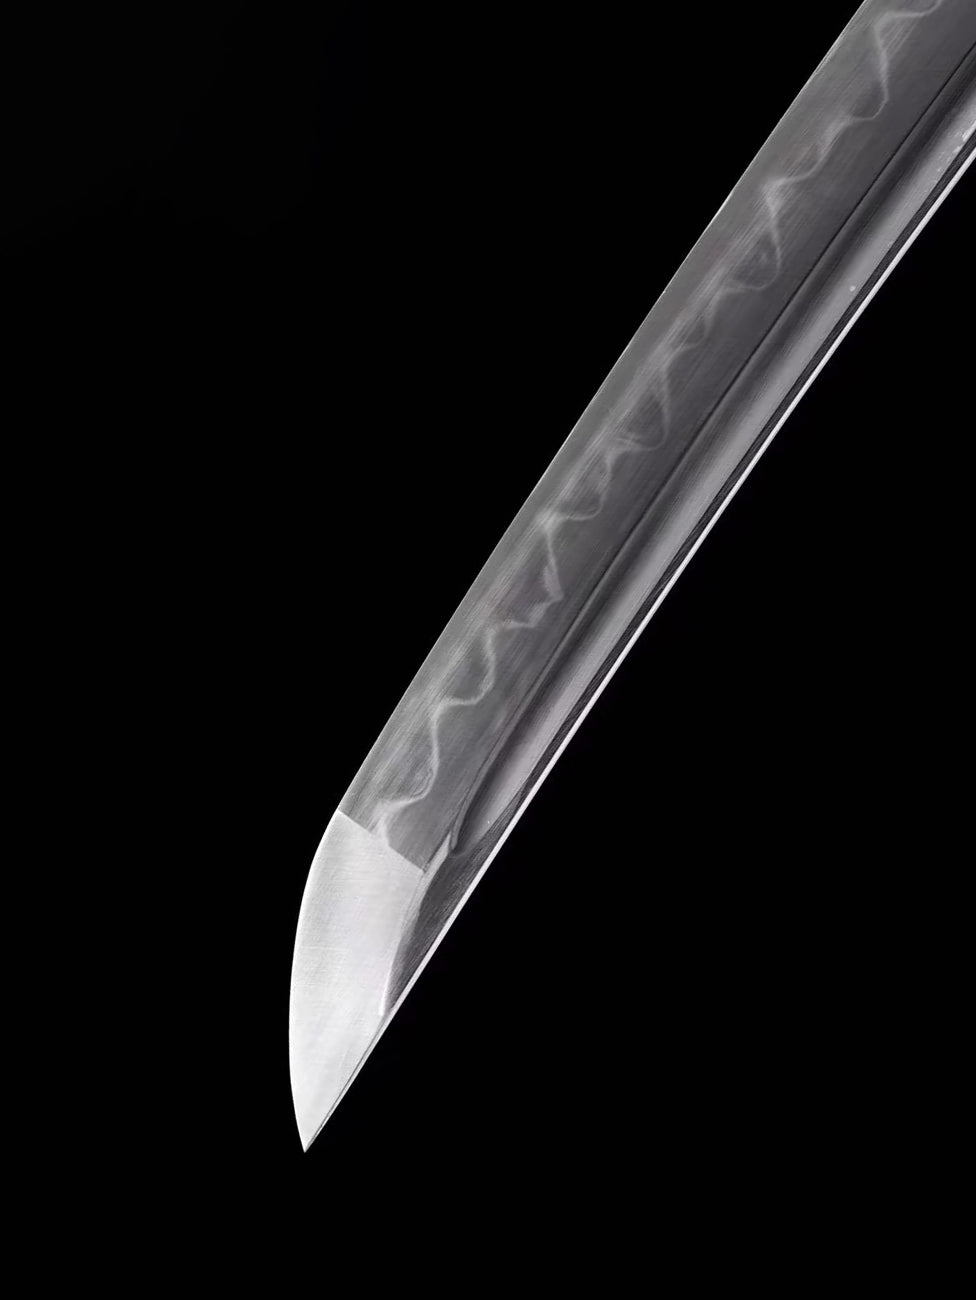 31-Inch Samurai Blade wakizashi 1095 Steel Katana with Clay Tempered